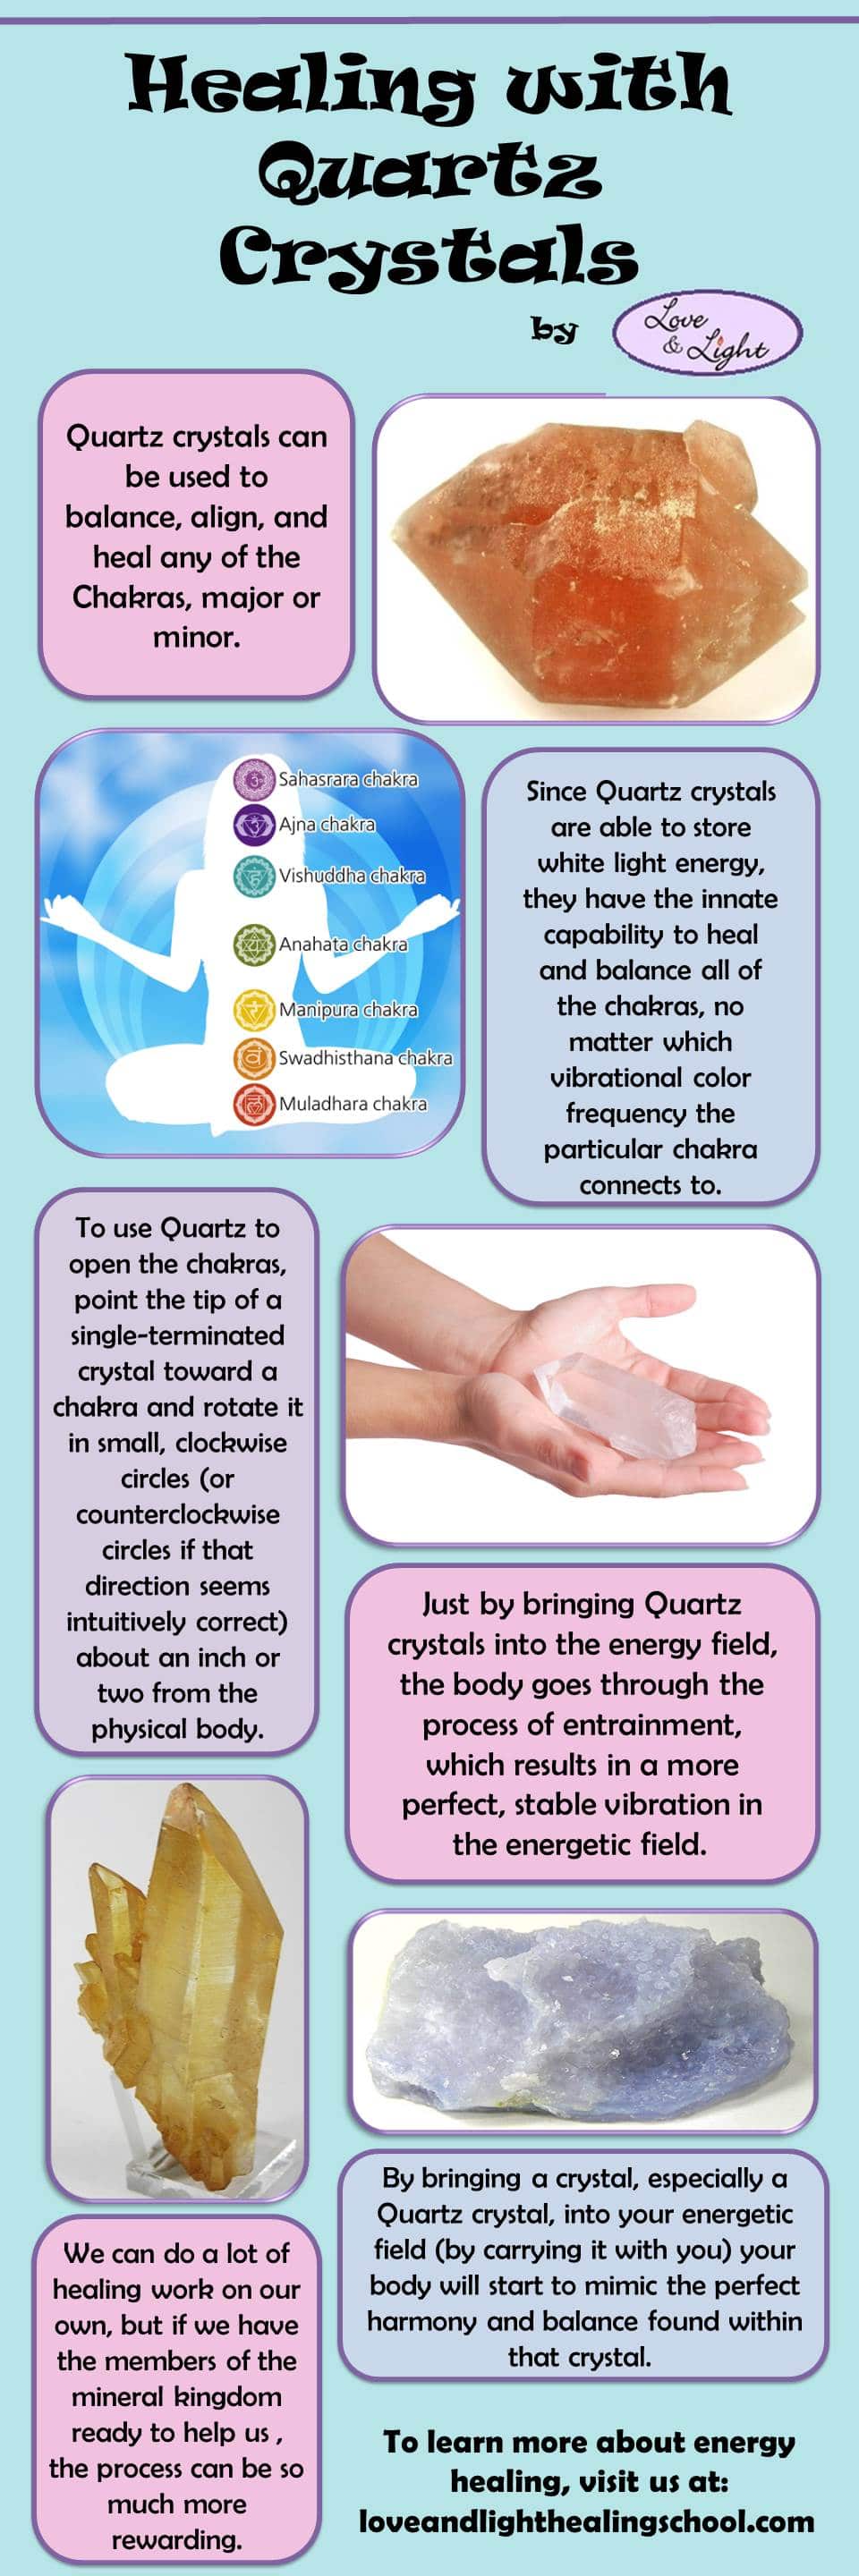 Healing with Quartz Crystals